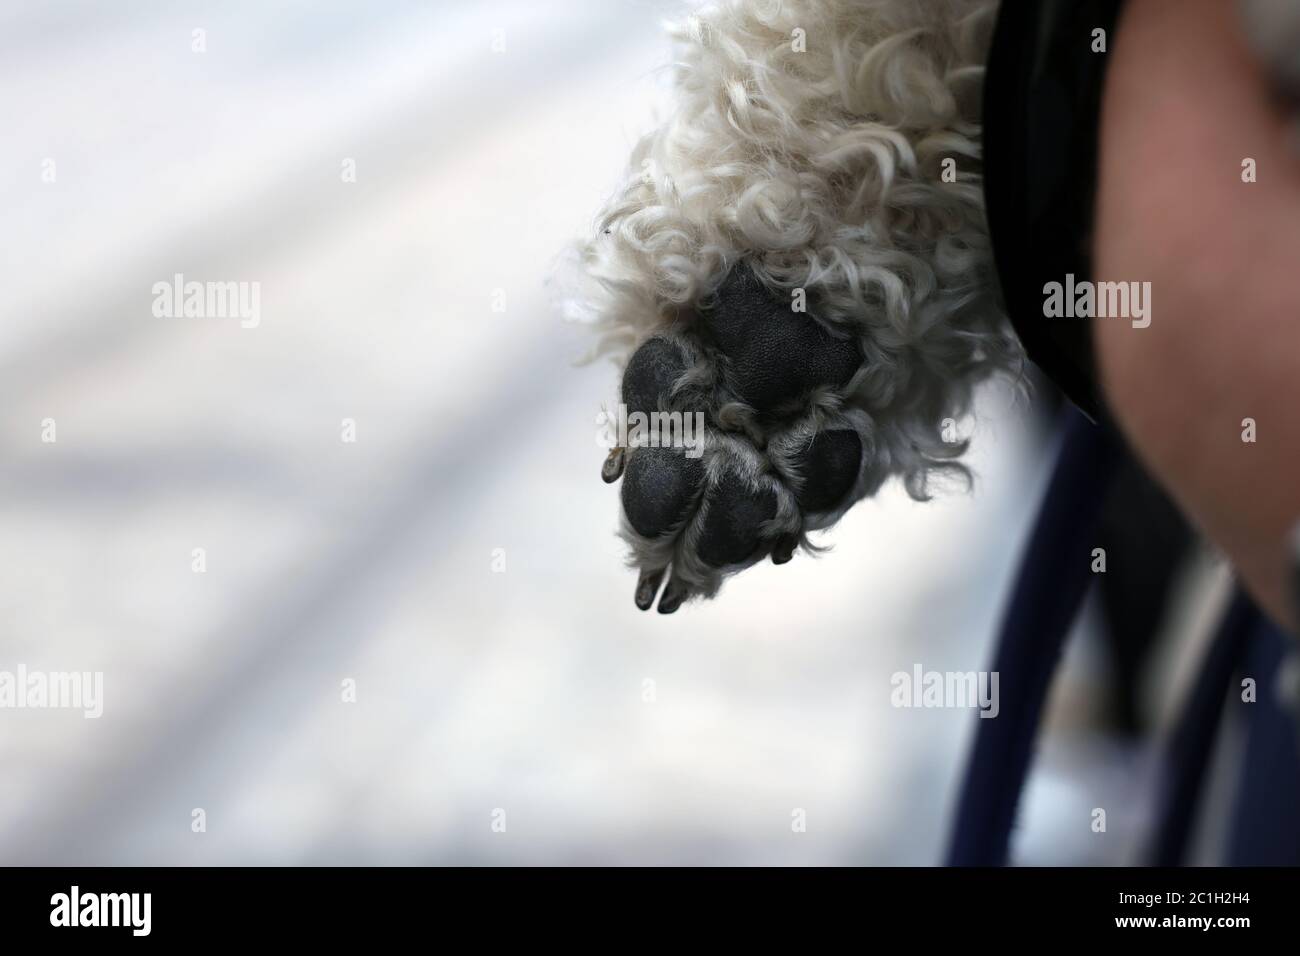 Paw di un piccolo cane bianco del puodle stretta dal relativo proprietario. Immagine a colori di primo piano. Foto Stock